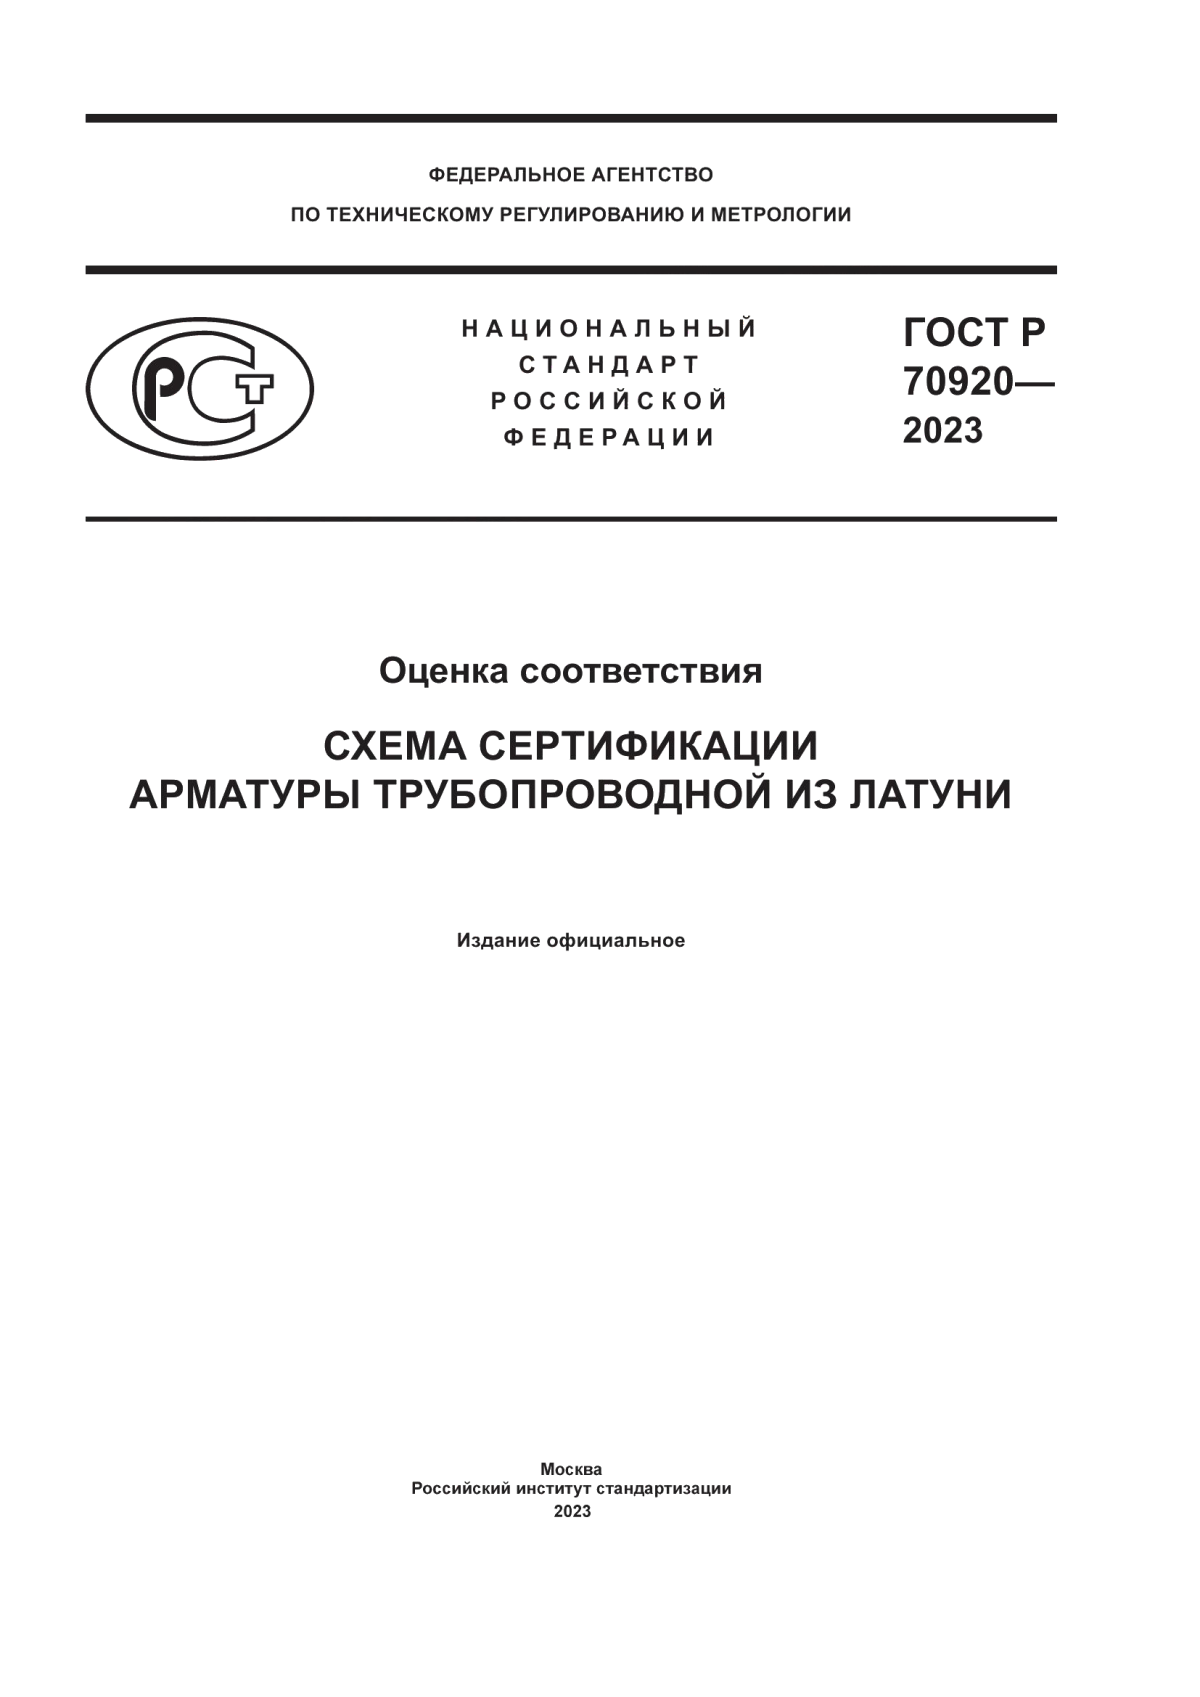 ГОСТ Р 70920-2023 Оценка соответствия. Схема сертификации арматуры трубопроводной из латуни